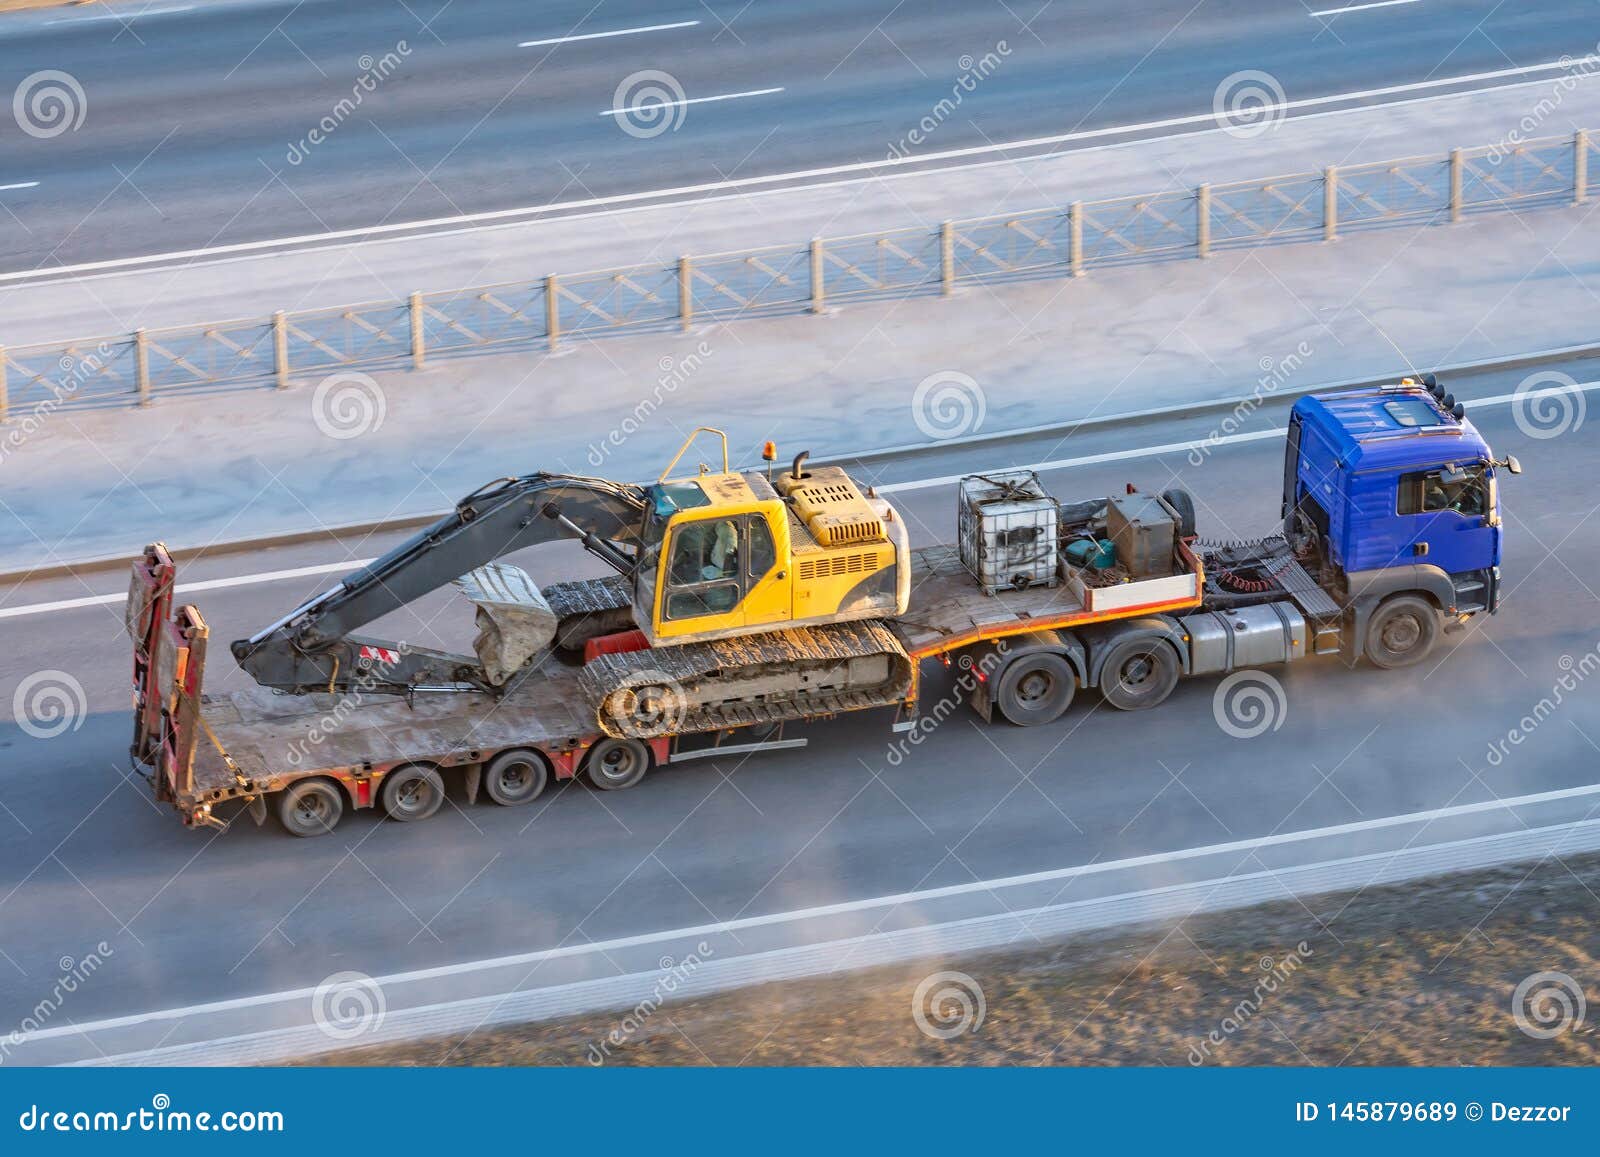 https://thumbs.dreamstime.com/z/camion-avec-une-longue-plate-forme-de-remorque-pour-transporter-les-machines-lourdes-excavatrice-charg%C3%A9e-chenille-le-seau-145879689.jpg